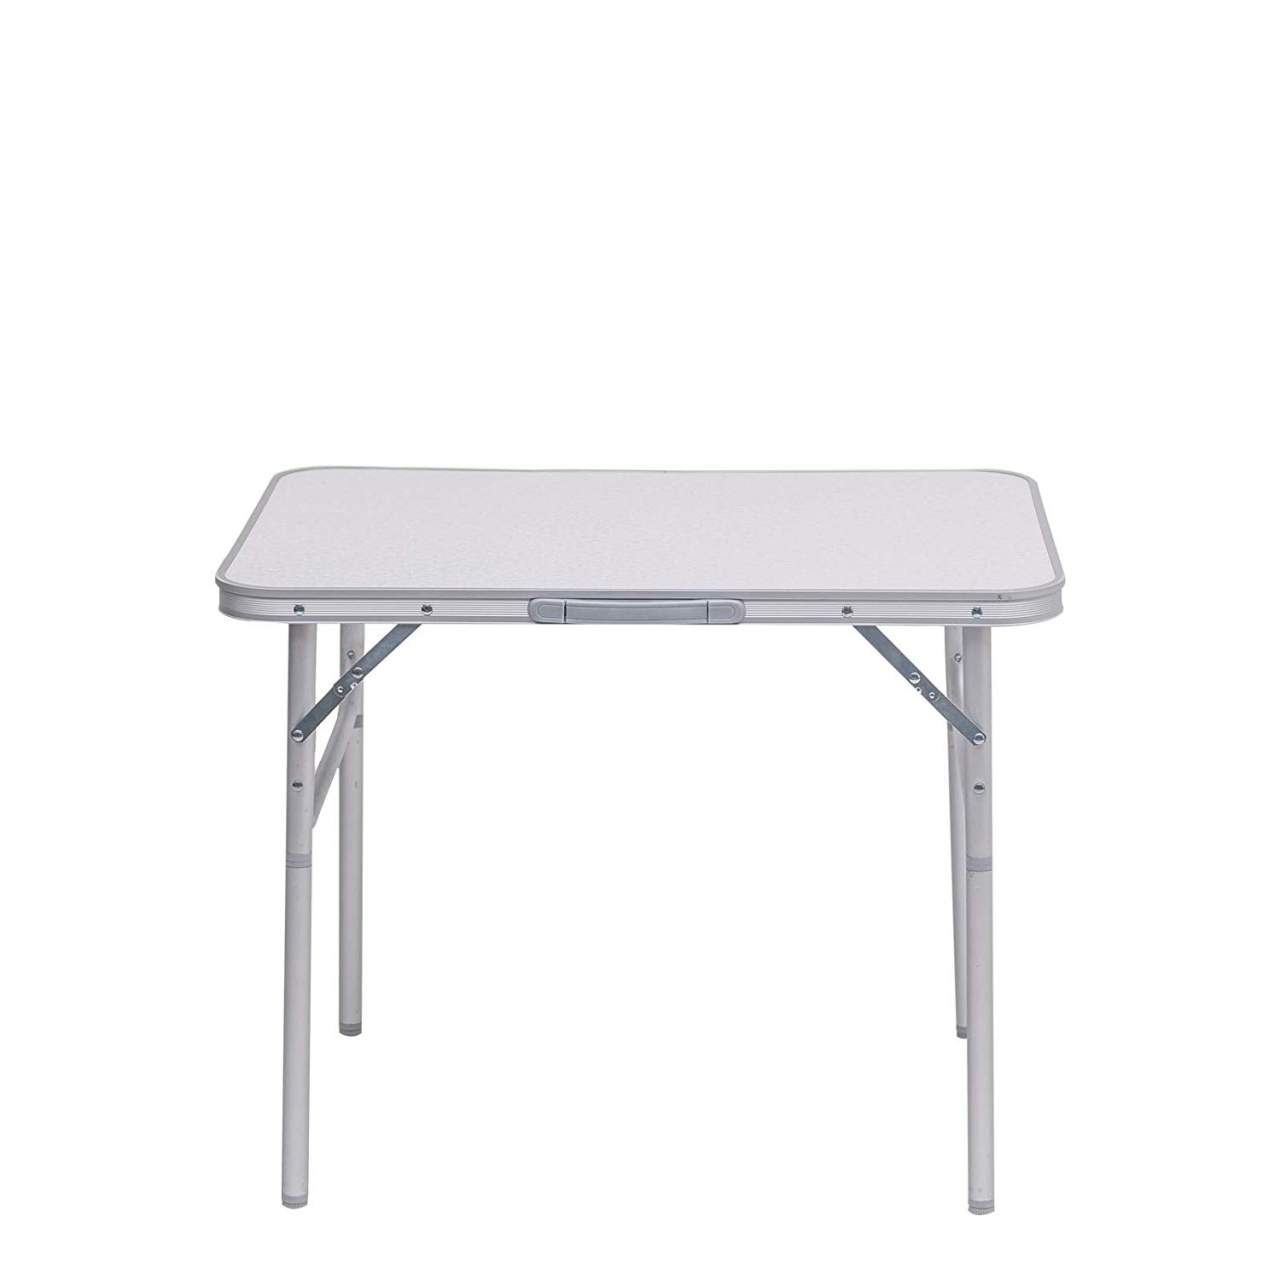 Klappbar Campingtisch MDF Tischplatte mit Alu-Rahmen Klapptisch 80x60x70cm 